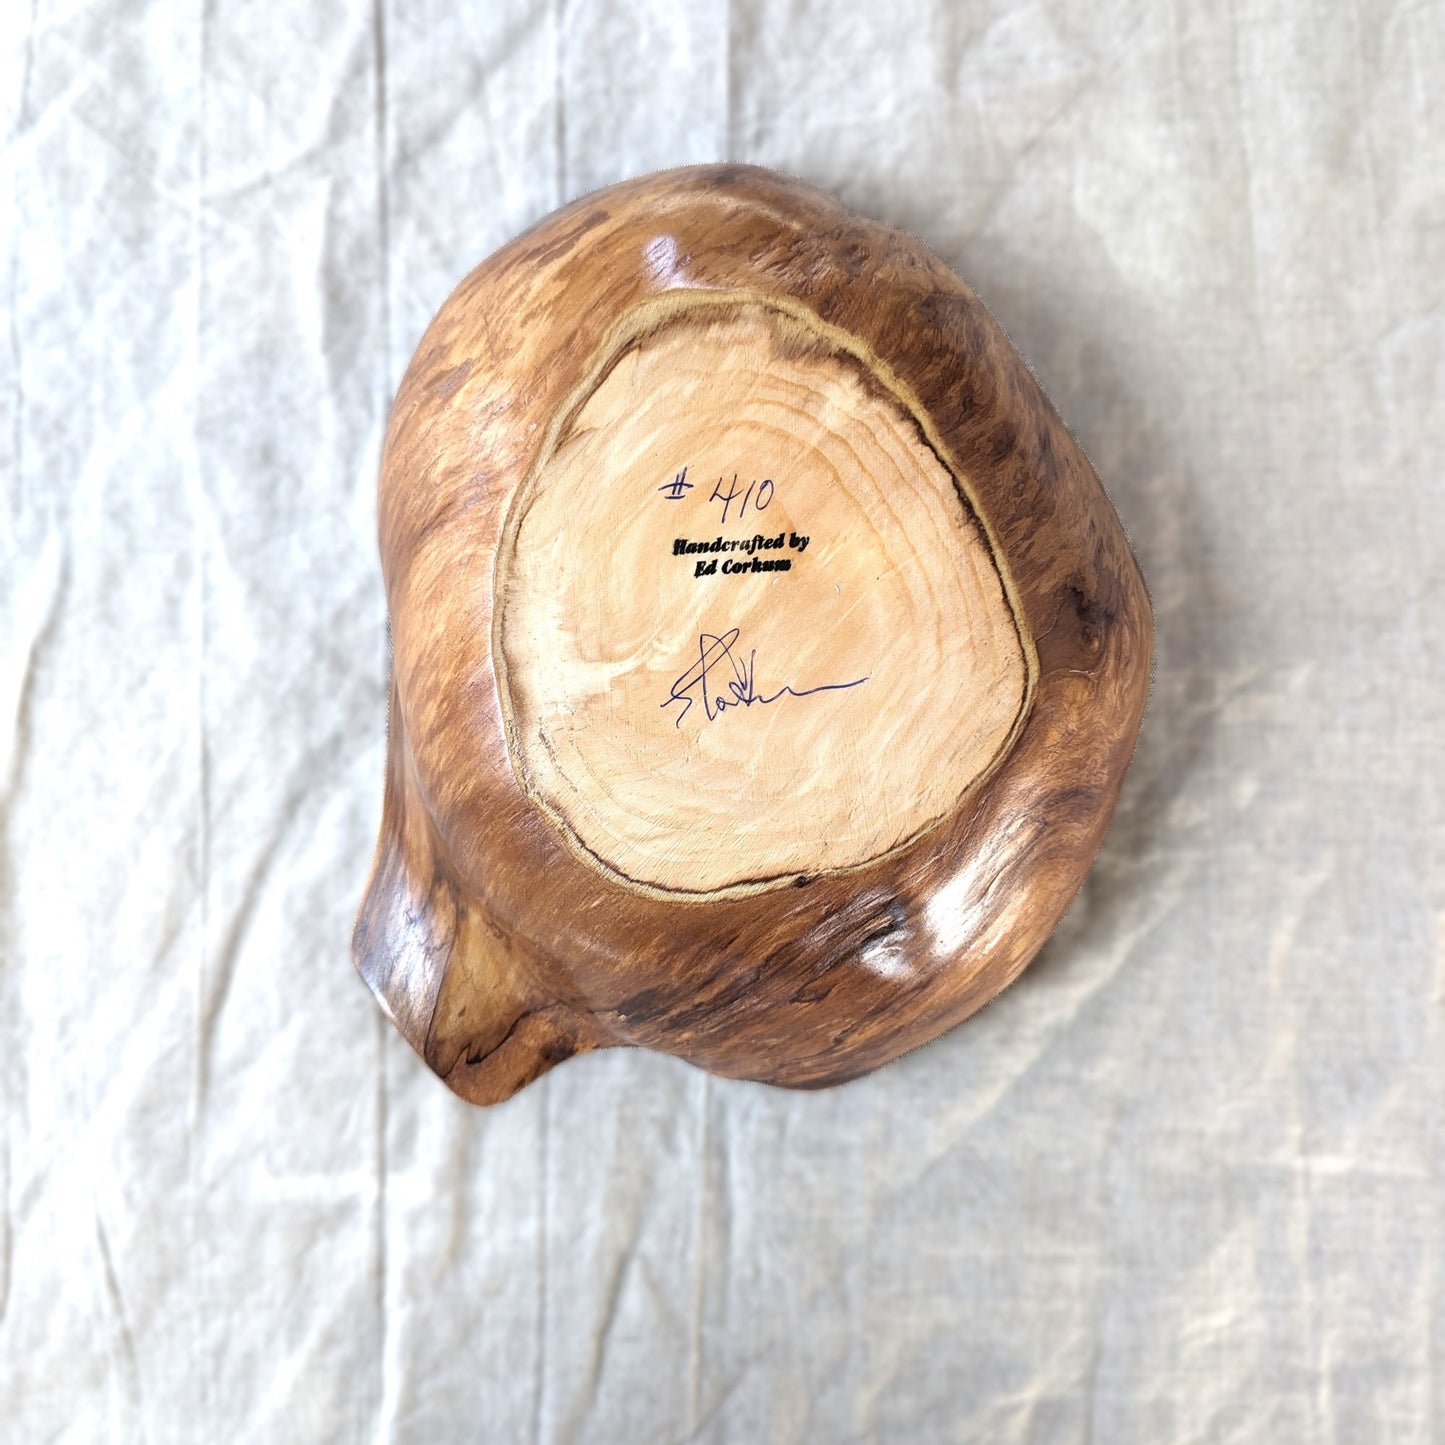 Heritage Crafts - Spruce Burl Bowls